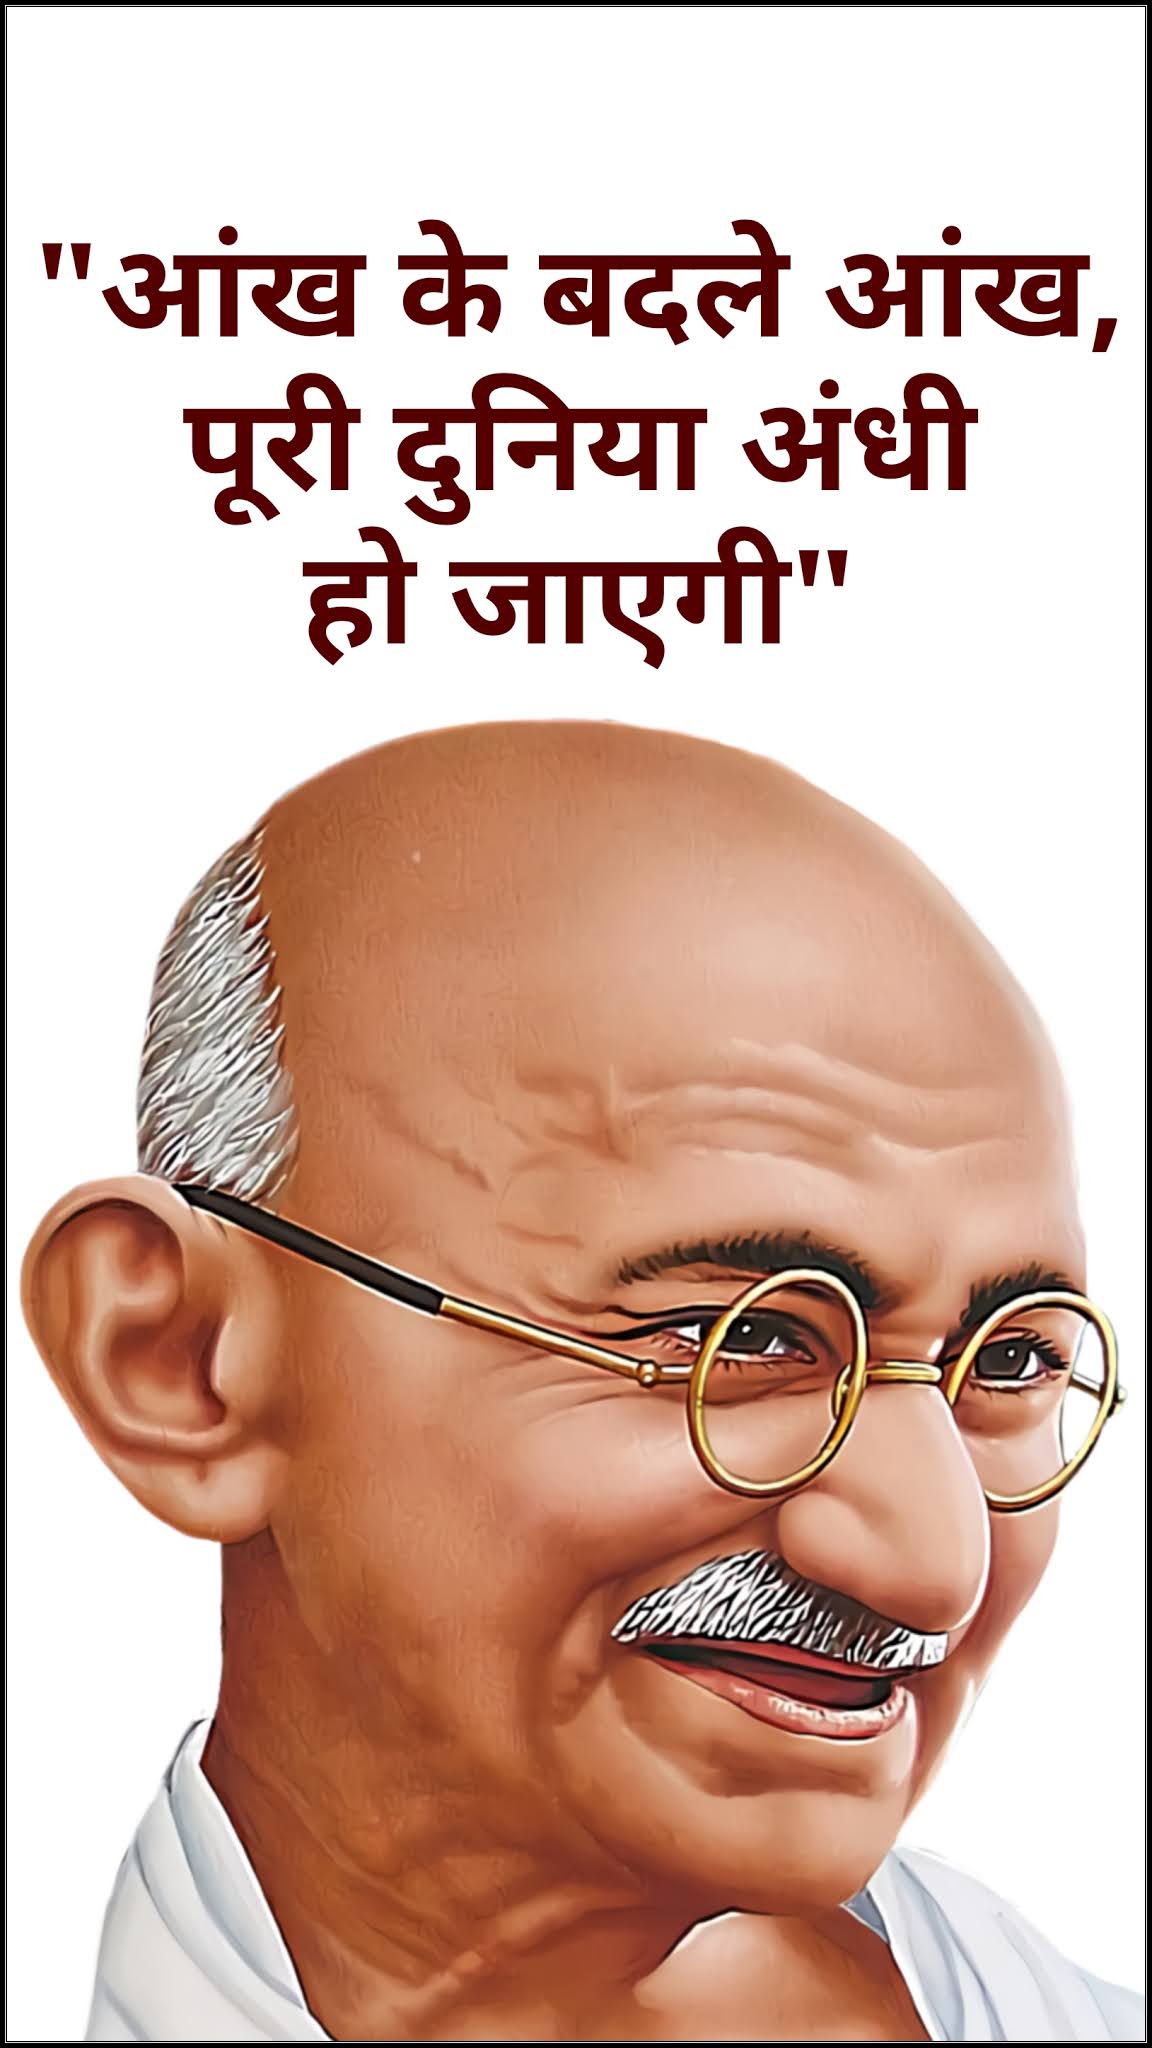 Gandhi ji quotes images in hindi